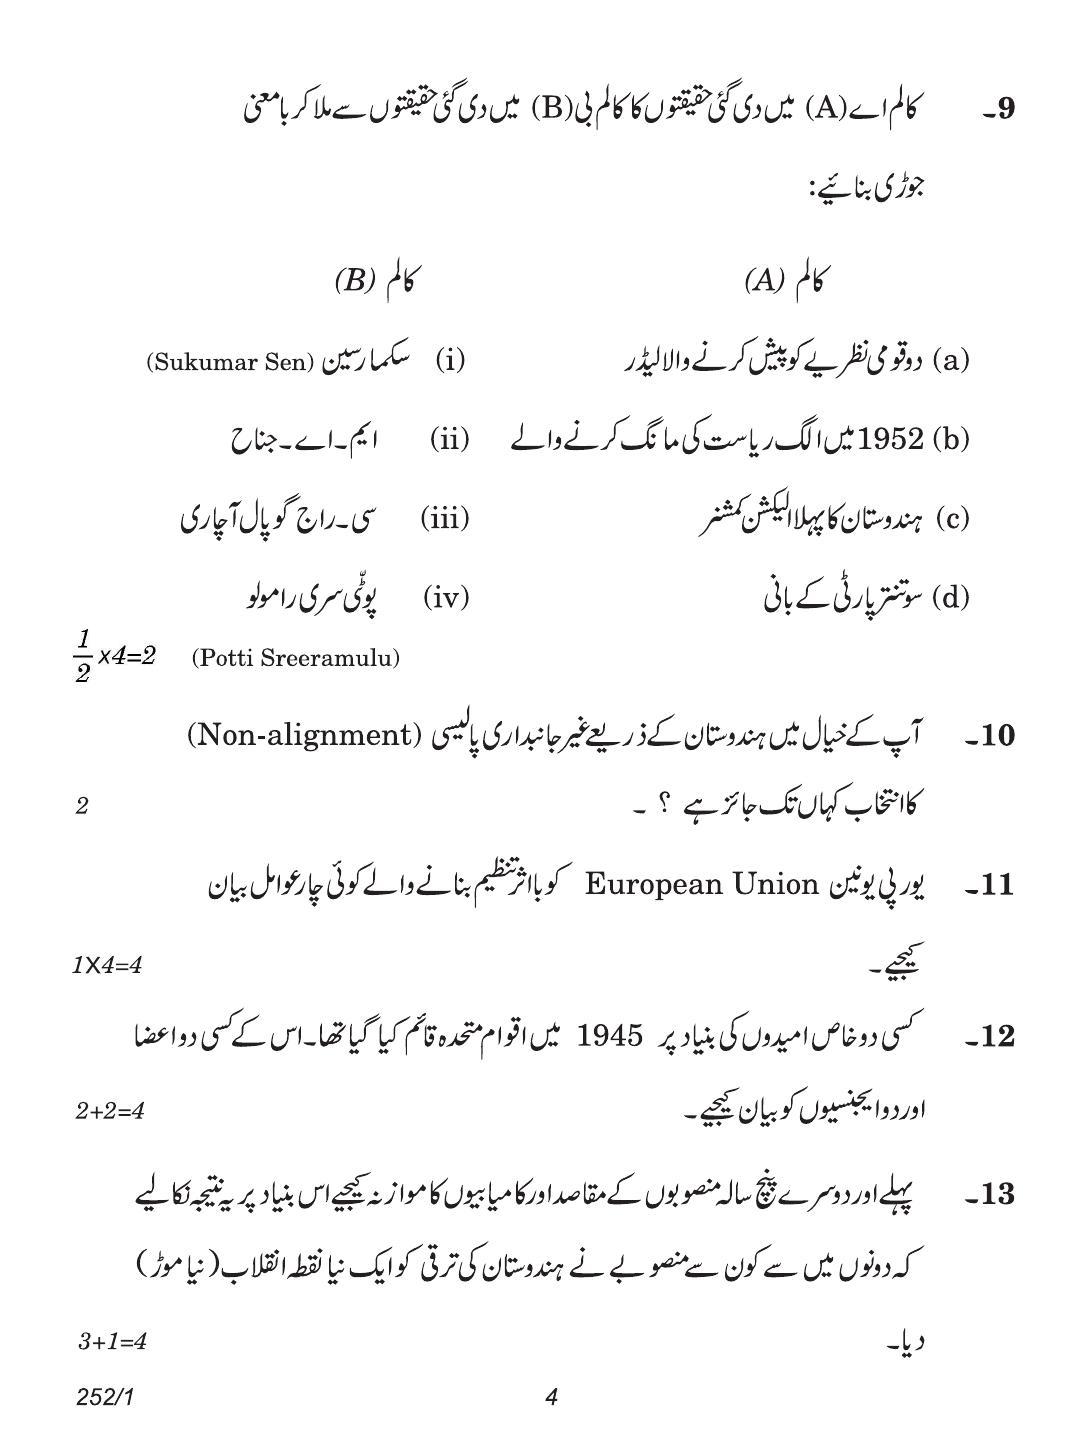 CBSE Class 12 252-1 (Political Science Urdu) 2018 Question Paper - Page 4